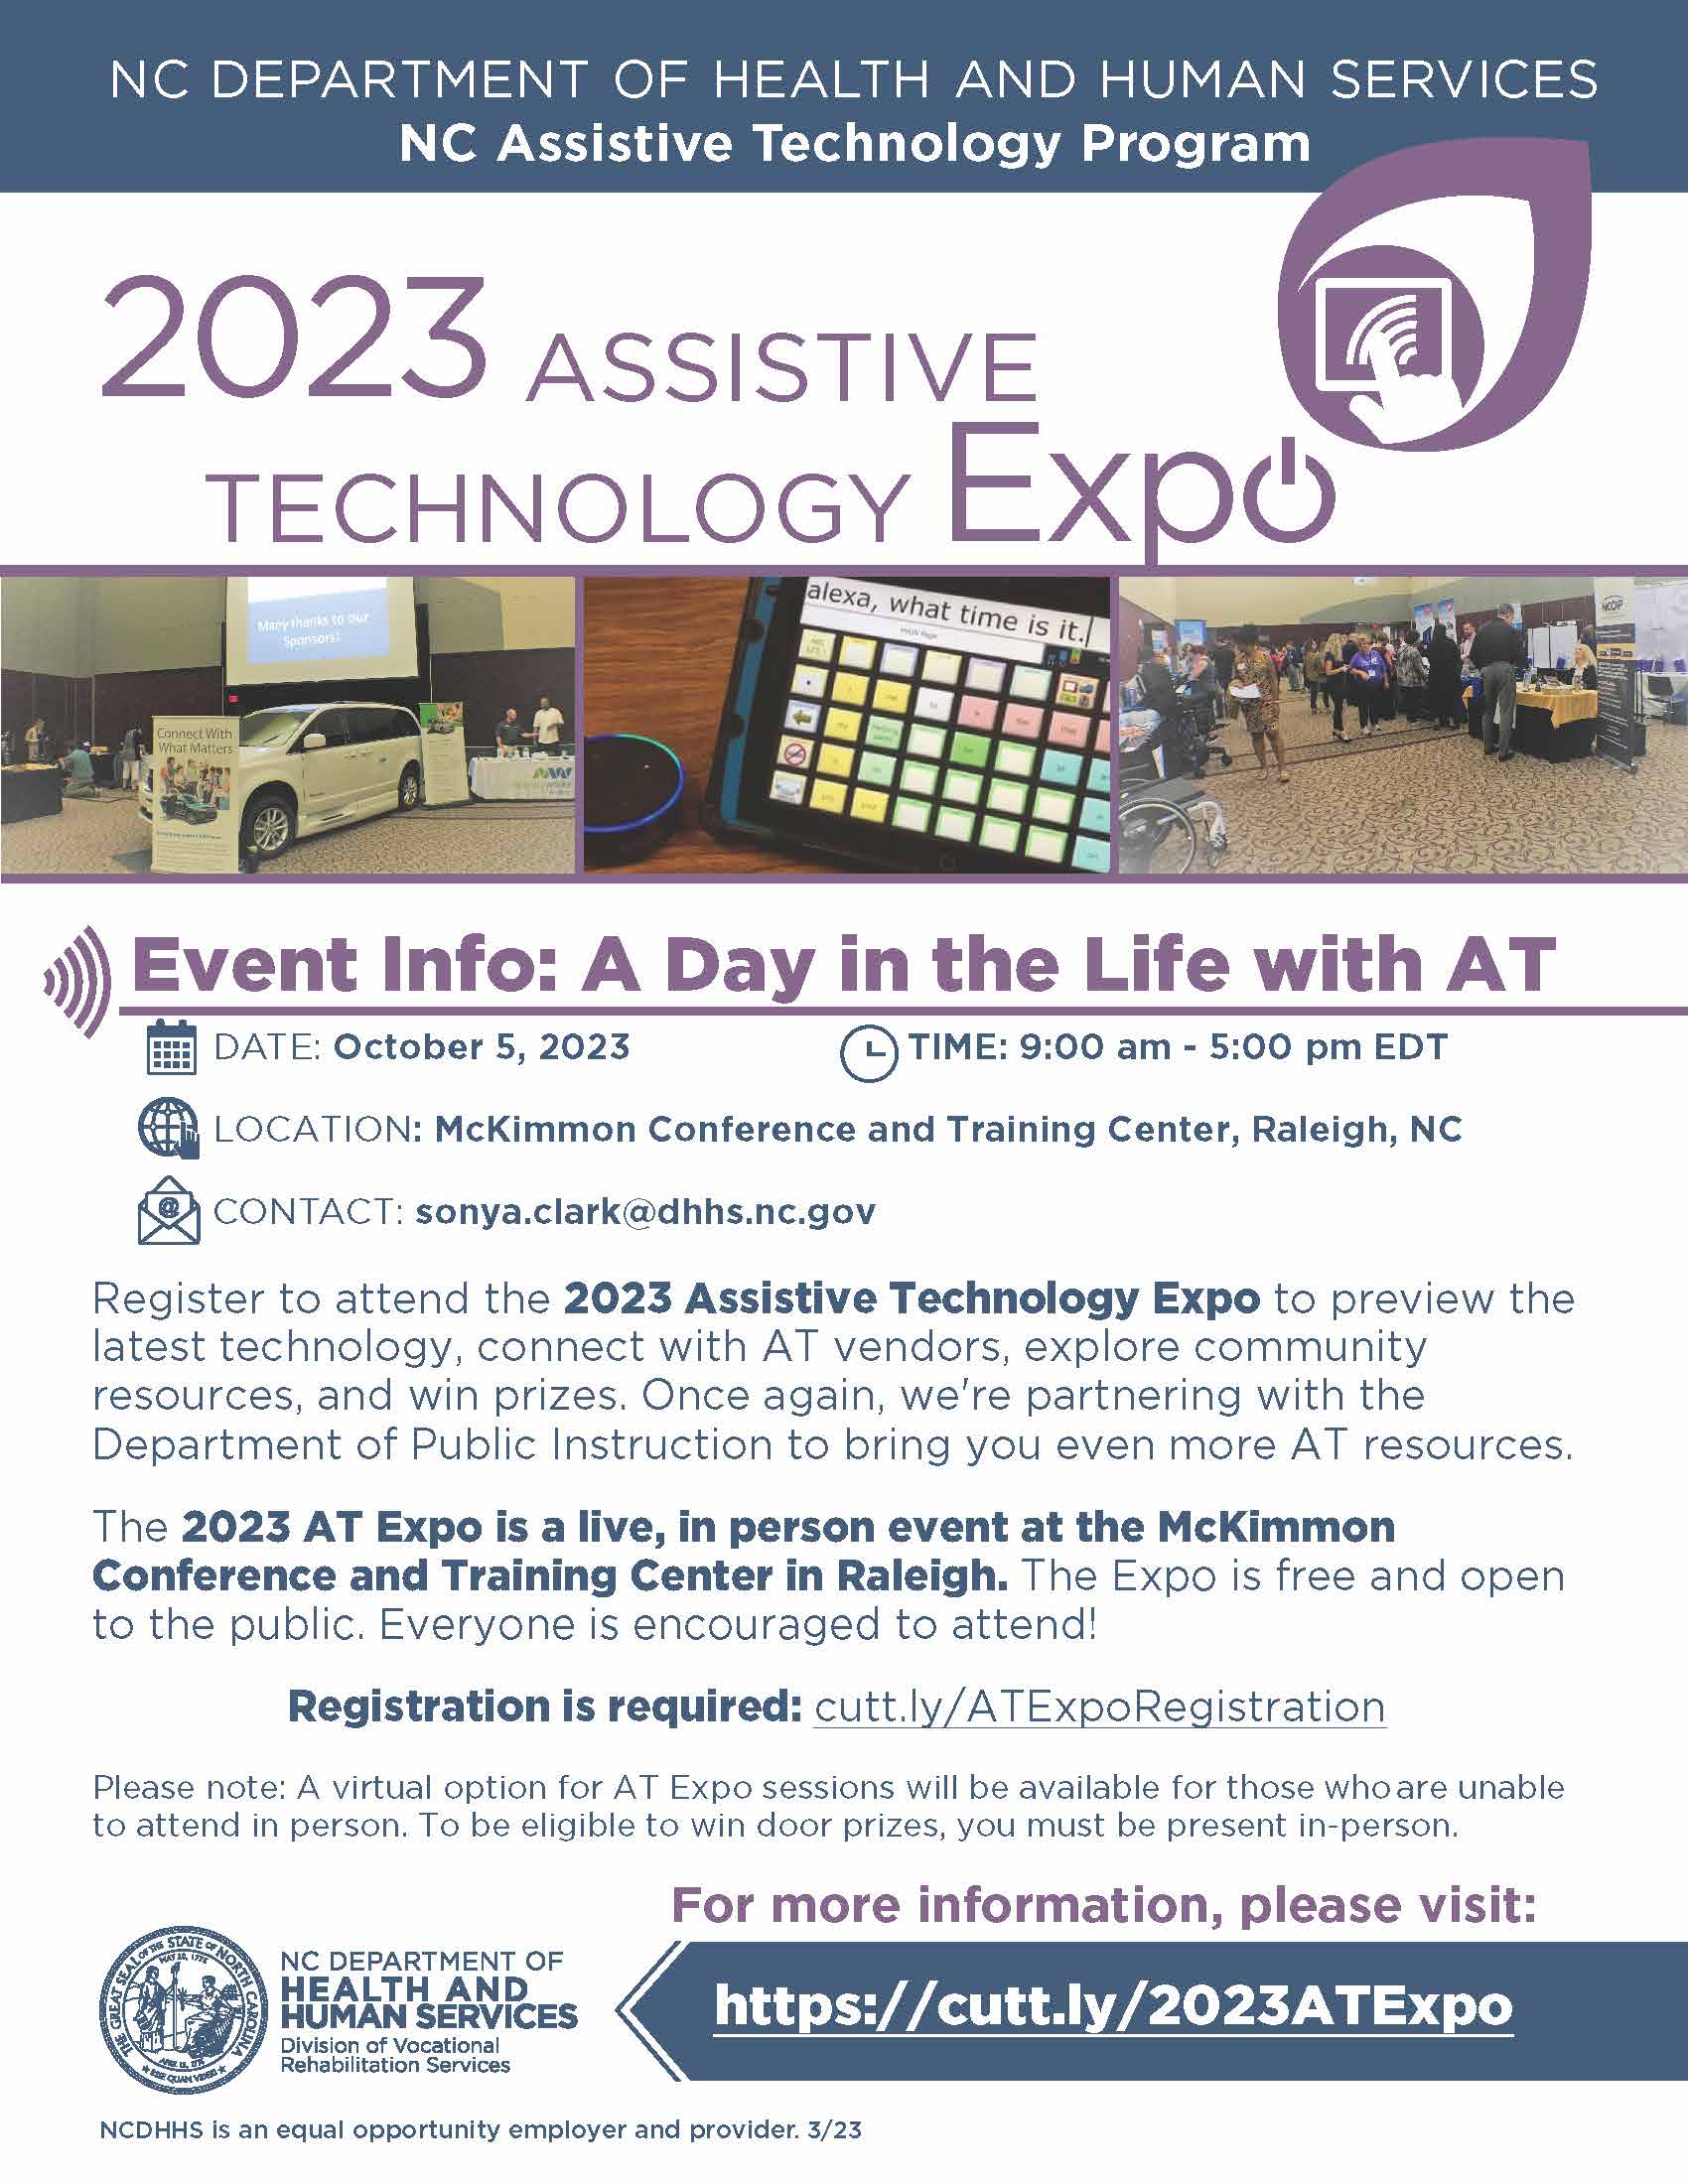 2023 Asststive Technology Expo